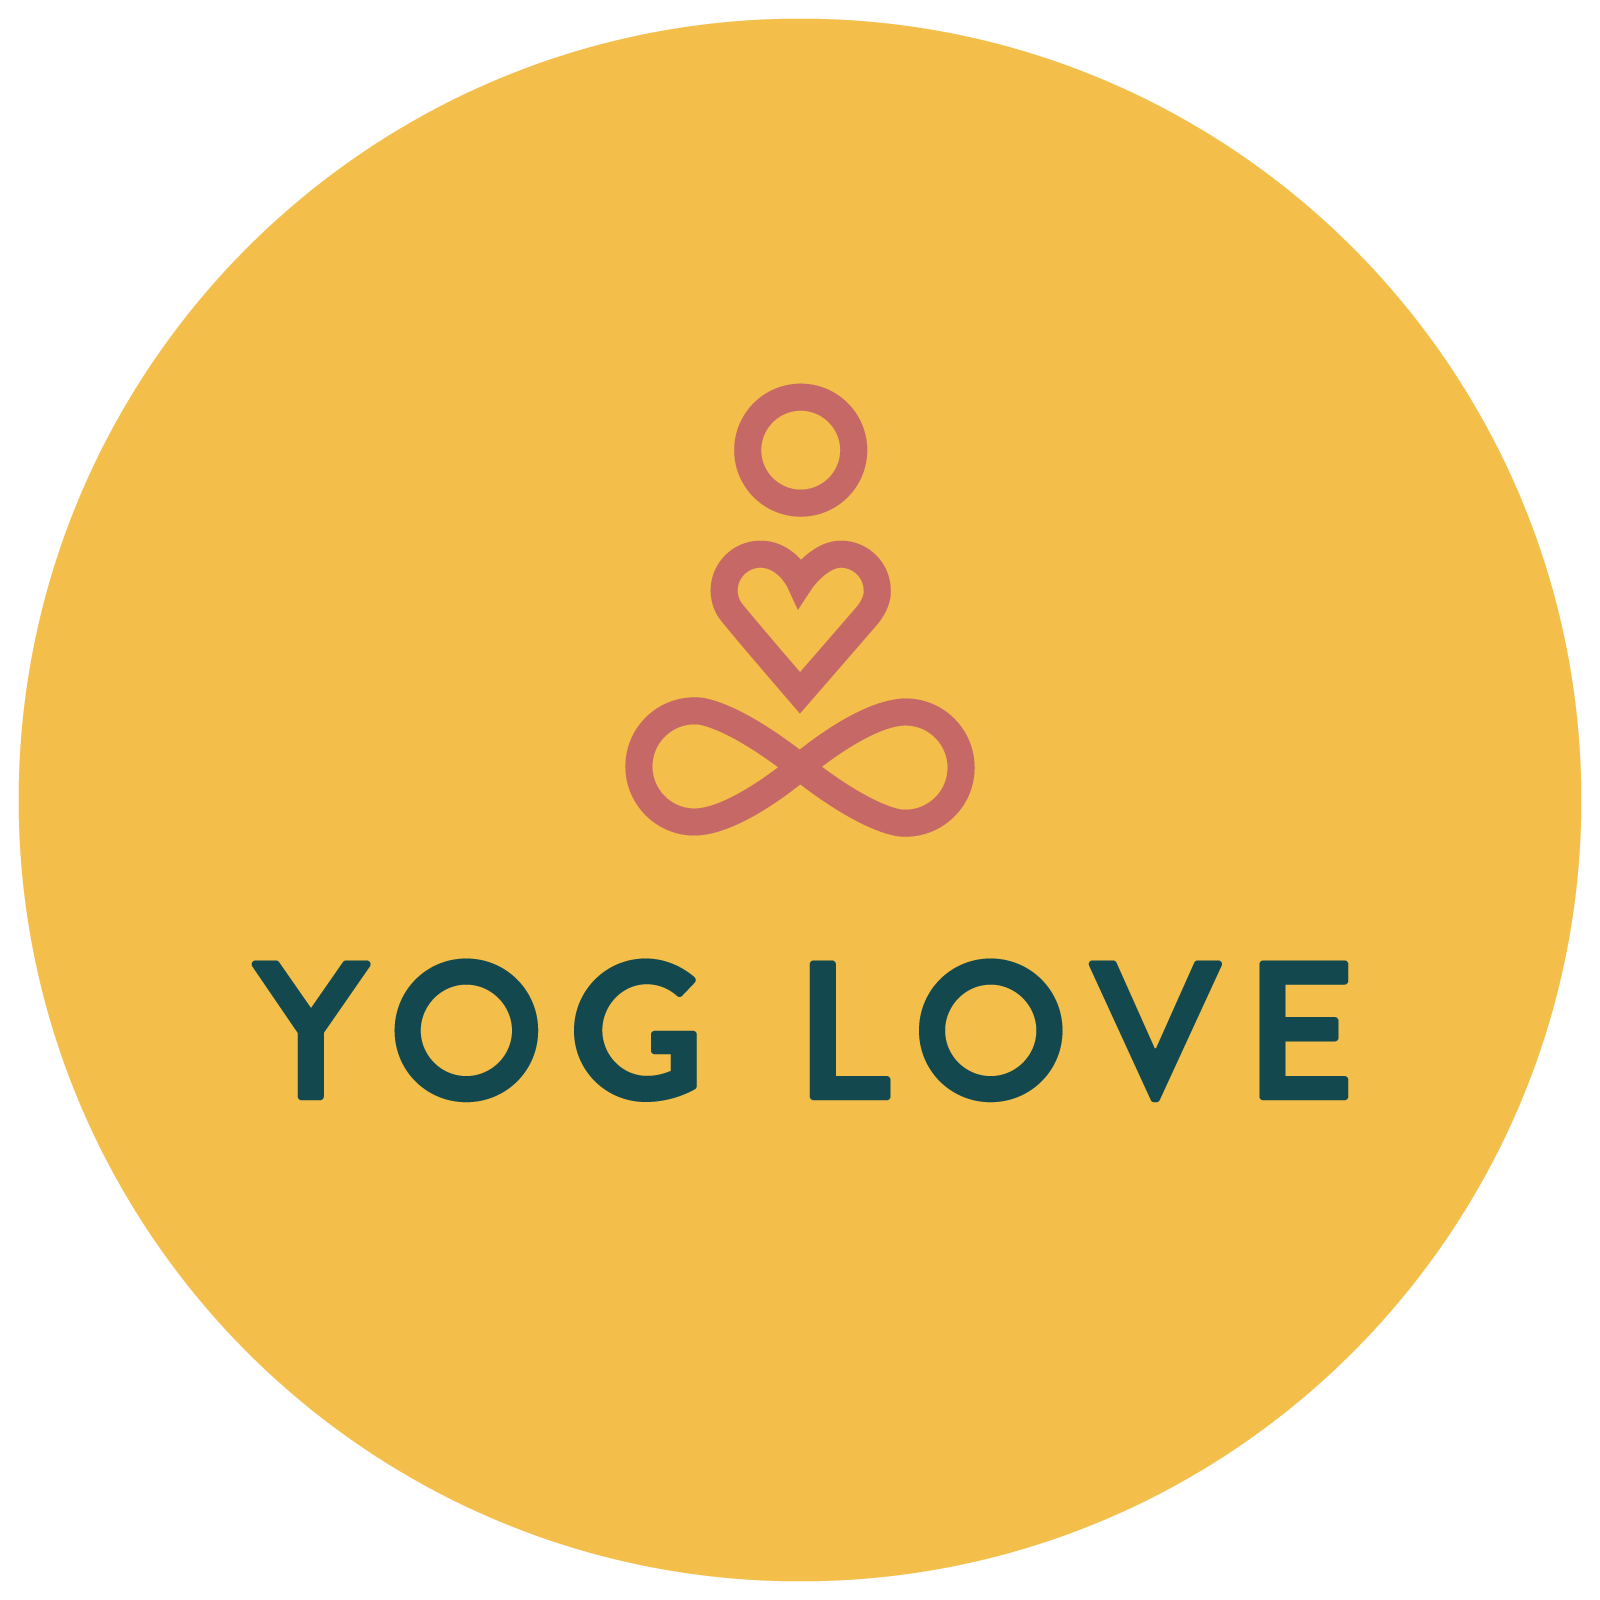 Yog Love logo